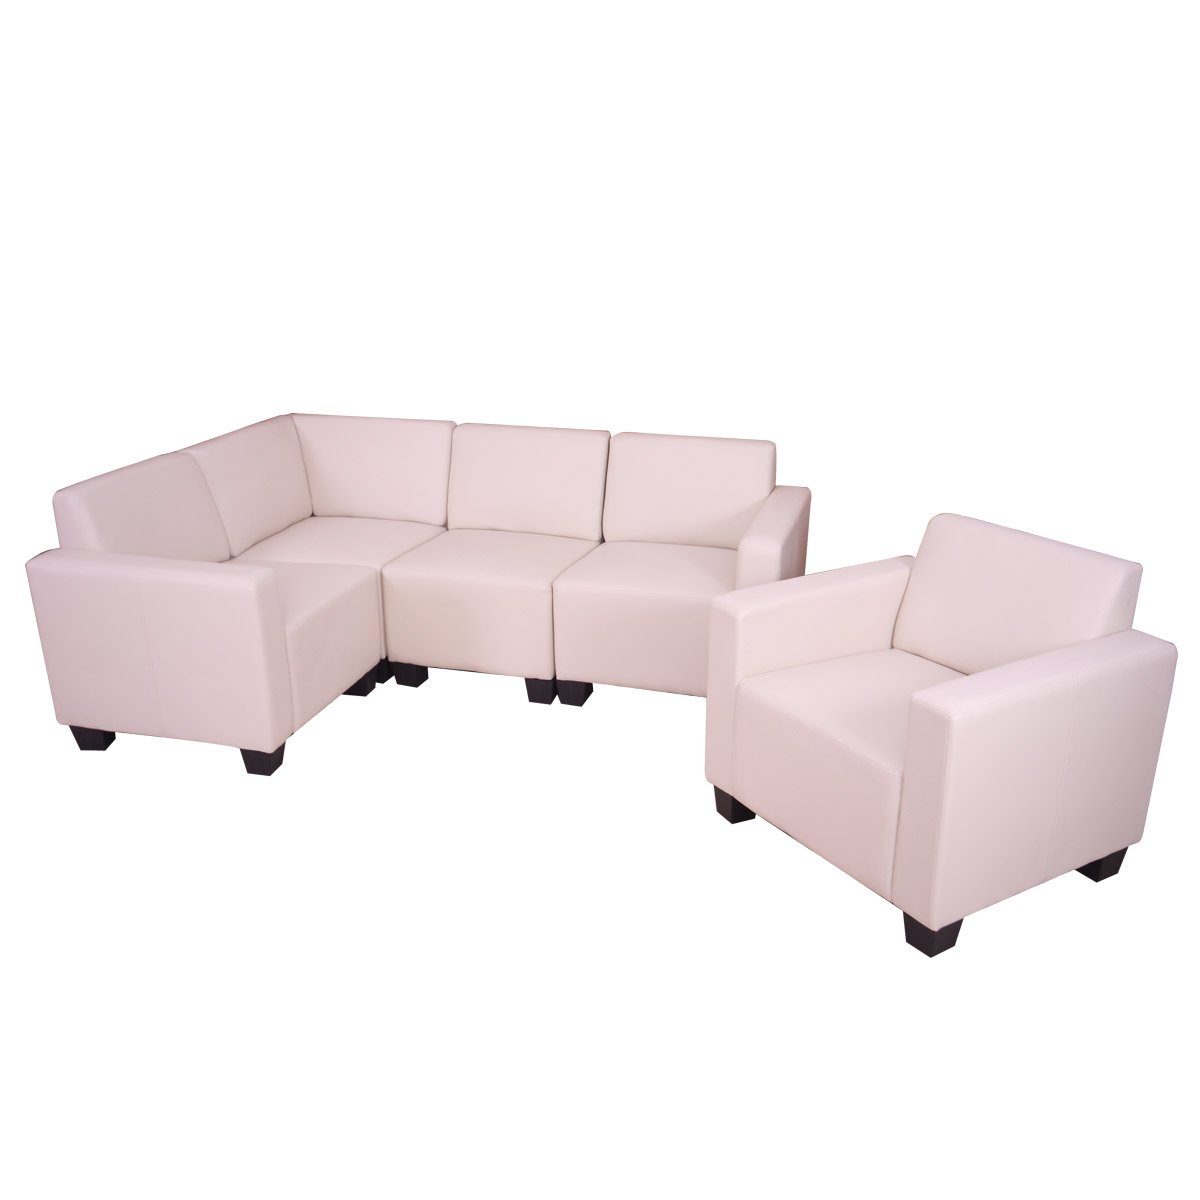 Sofa Modular LYON en 4 piezas + 1 Sofa individual, Gran acolchado, tapizado en piel color crema